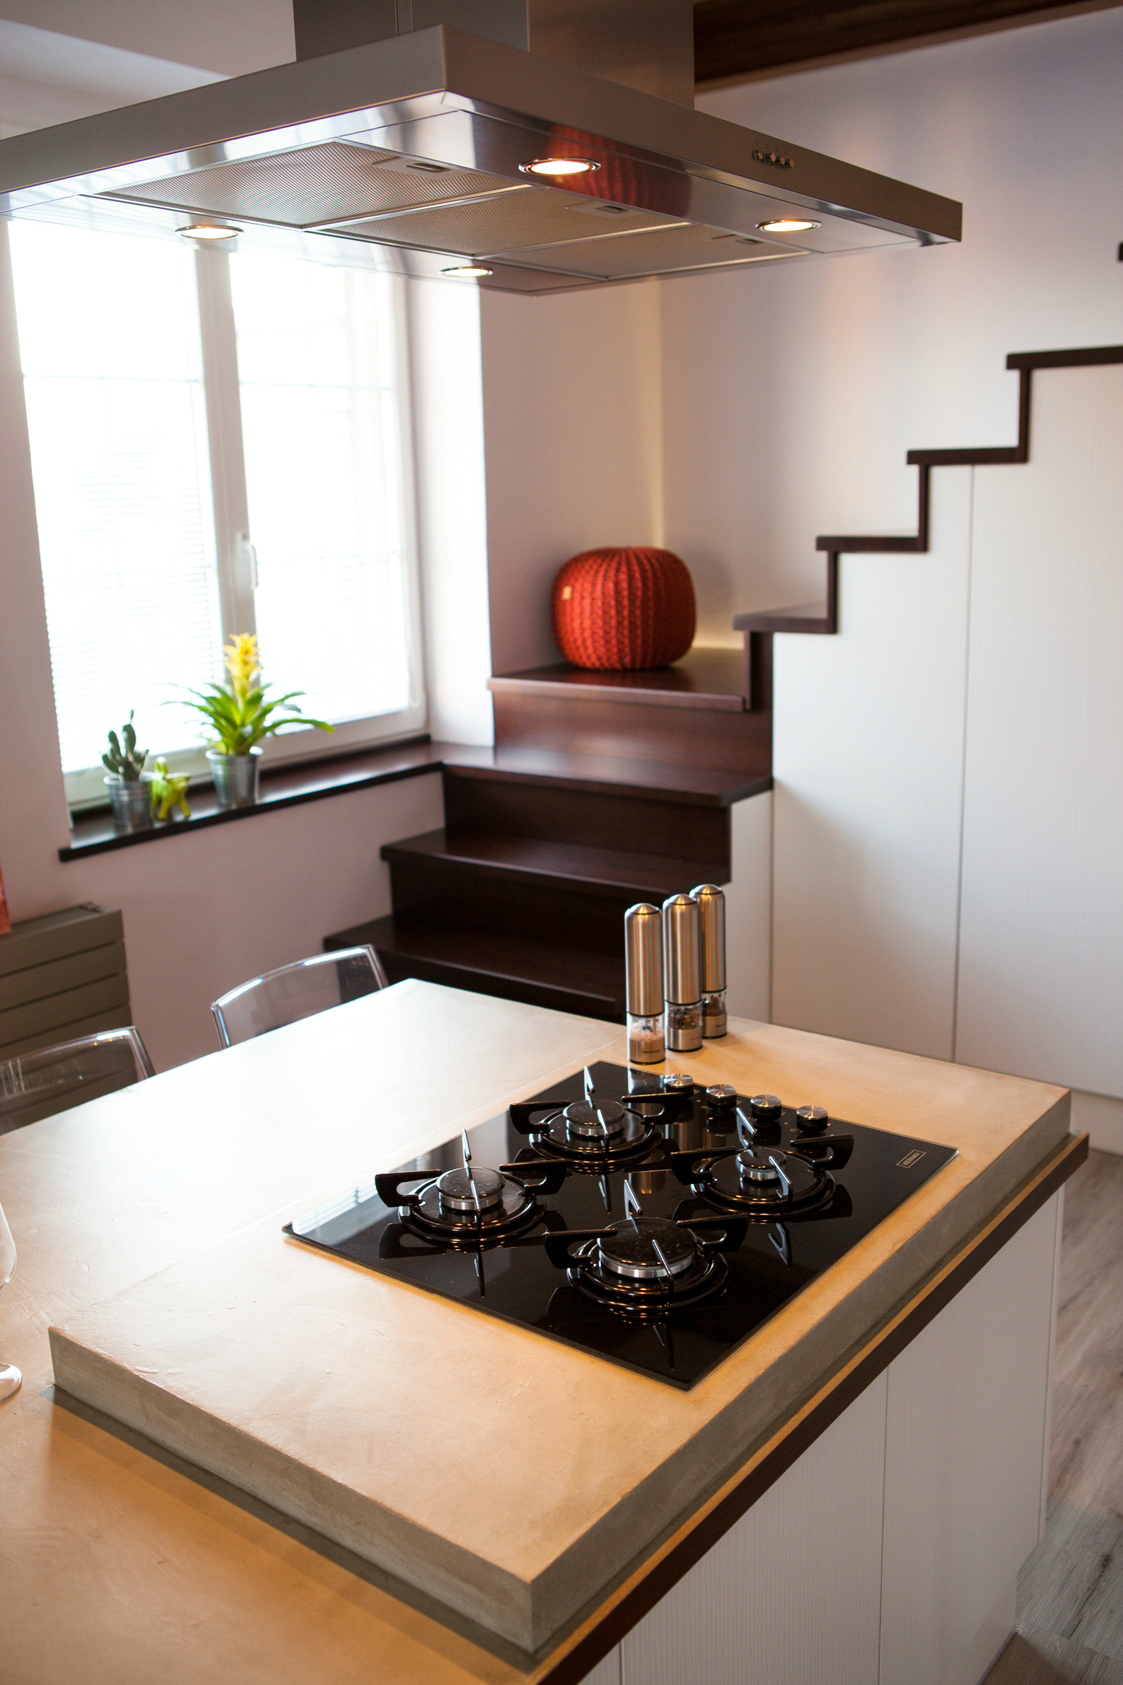 Barbora Sacher: Kuchyň pod schody, Spodní odpočívadlo schodů je záměrně v úrovni parapetu okna